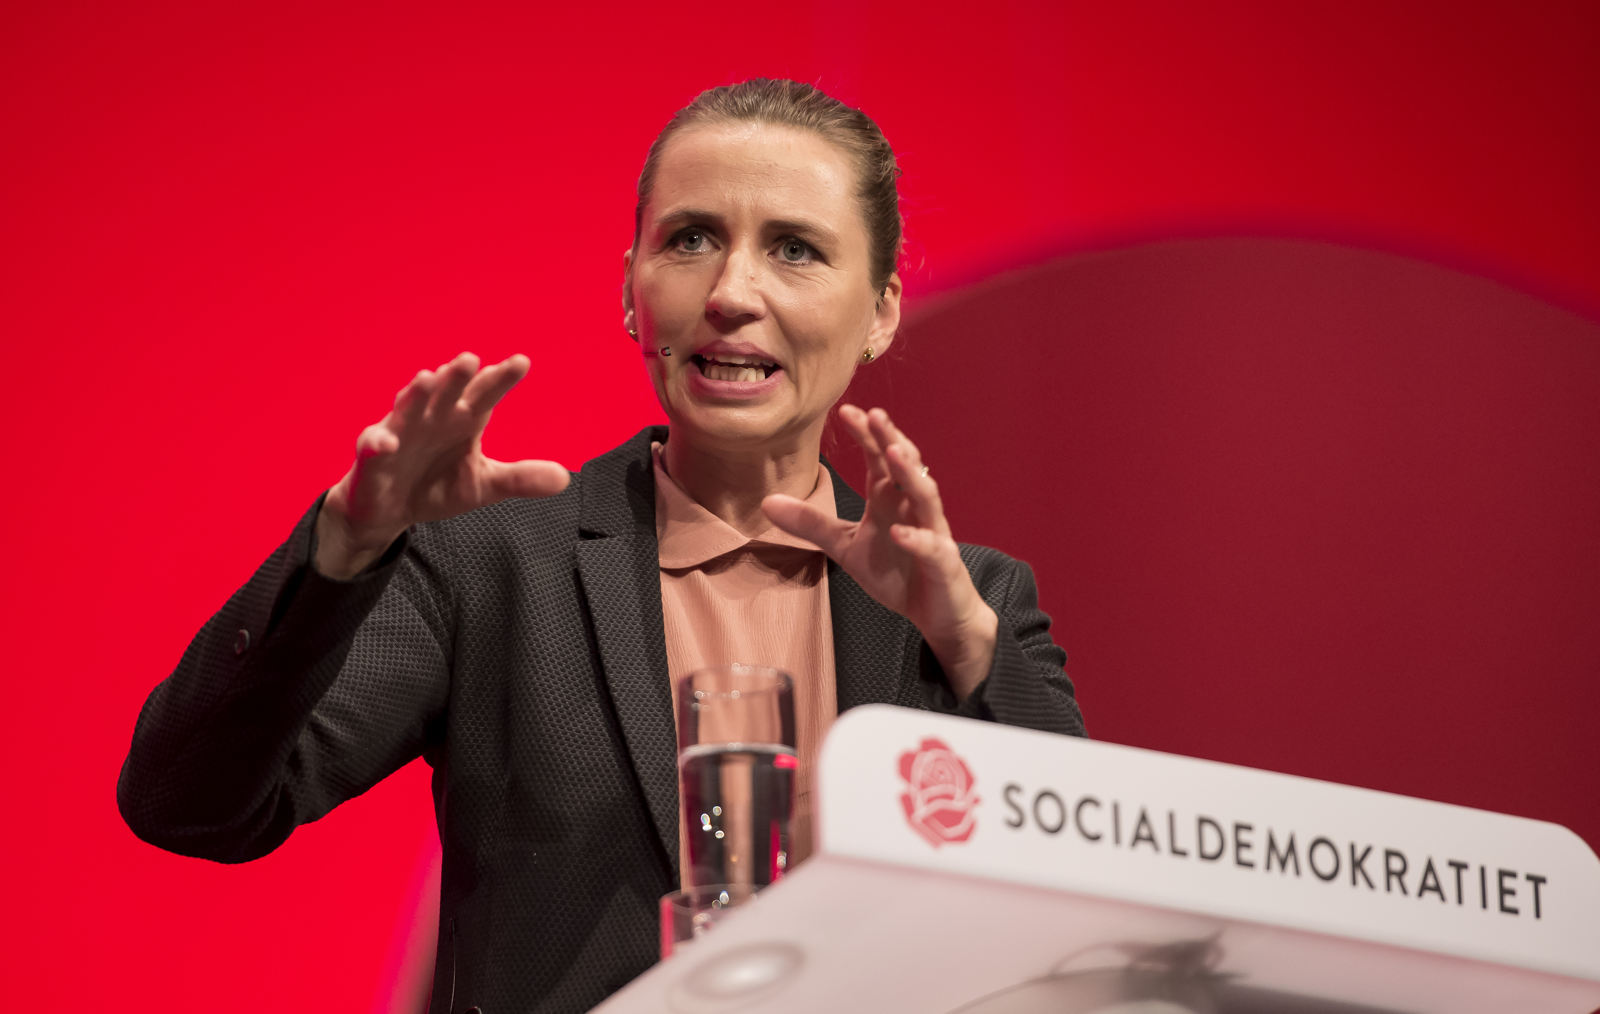 Kære Mette: Løft os op over fnidderet og virkelighedsfornægtelsen i dansk politik